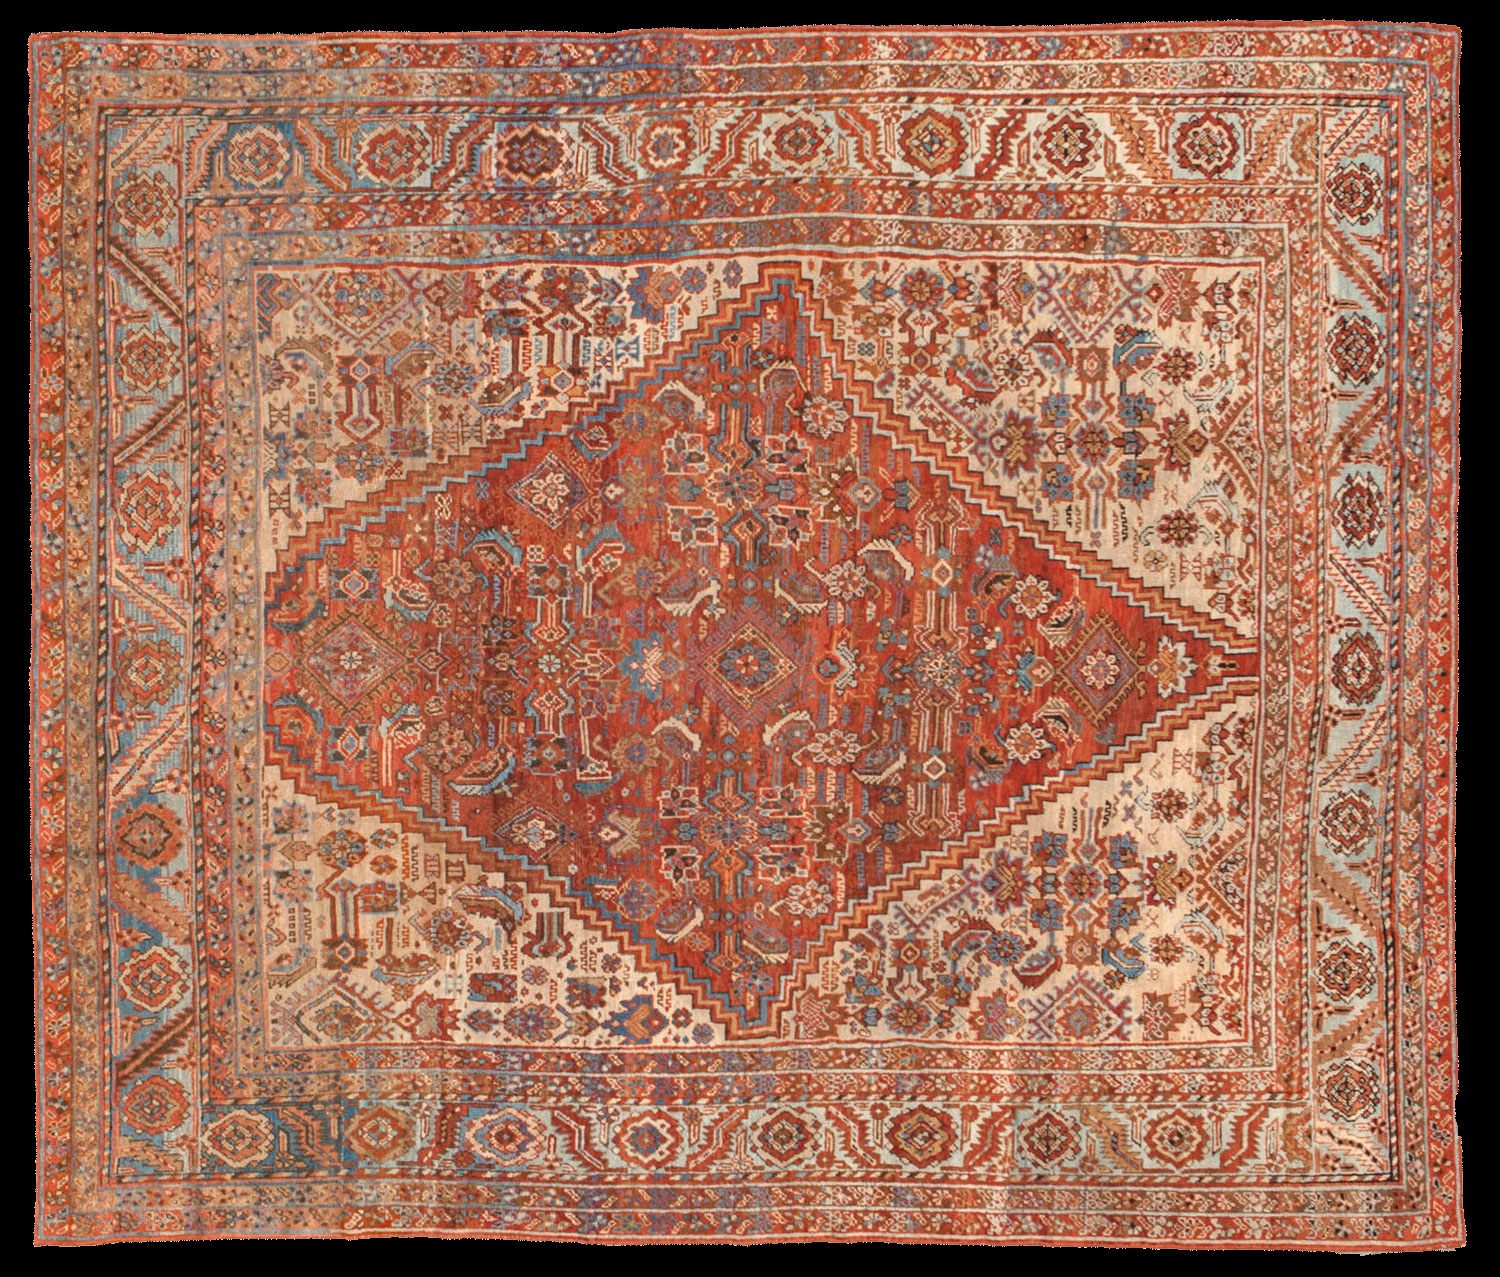 Antique bakshaish Carpet - # 53009